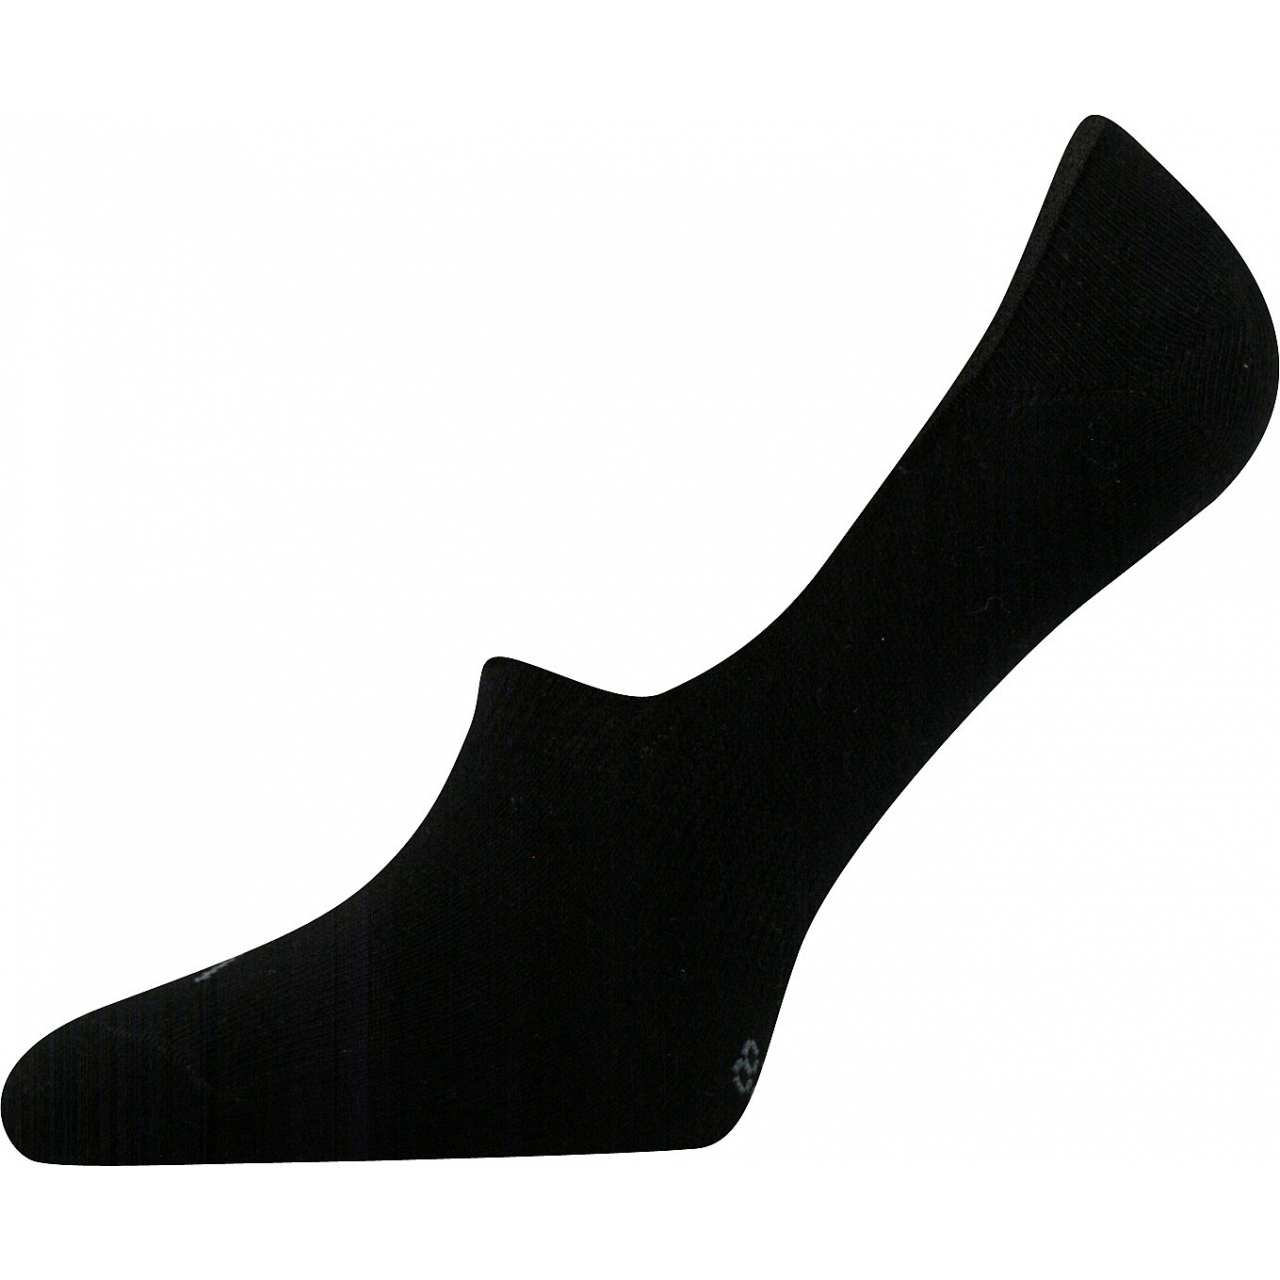 Ponožky unisex Voxx Verti - černé, 35-38